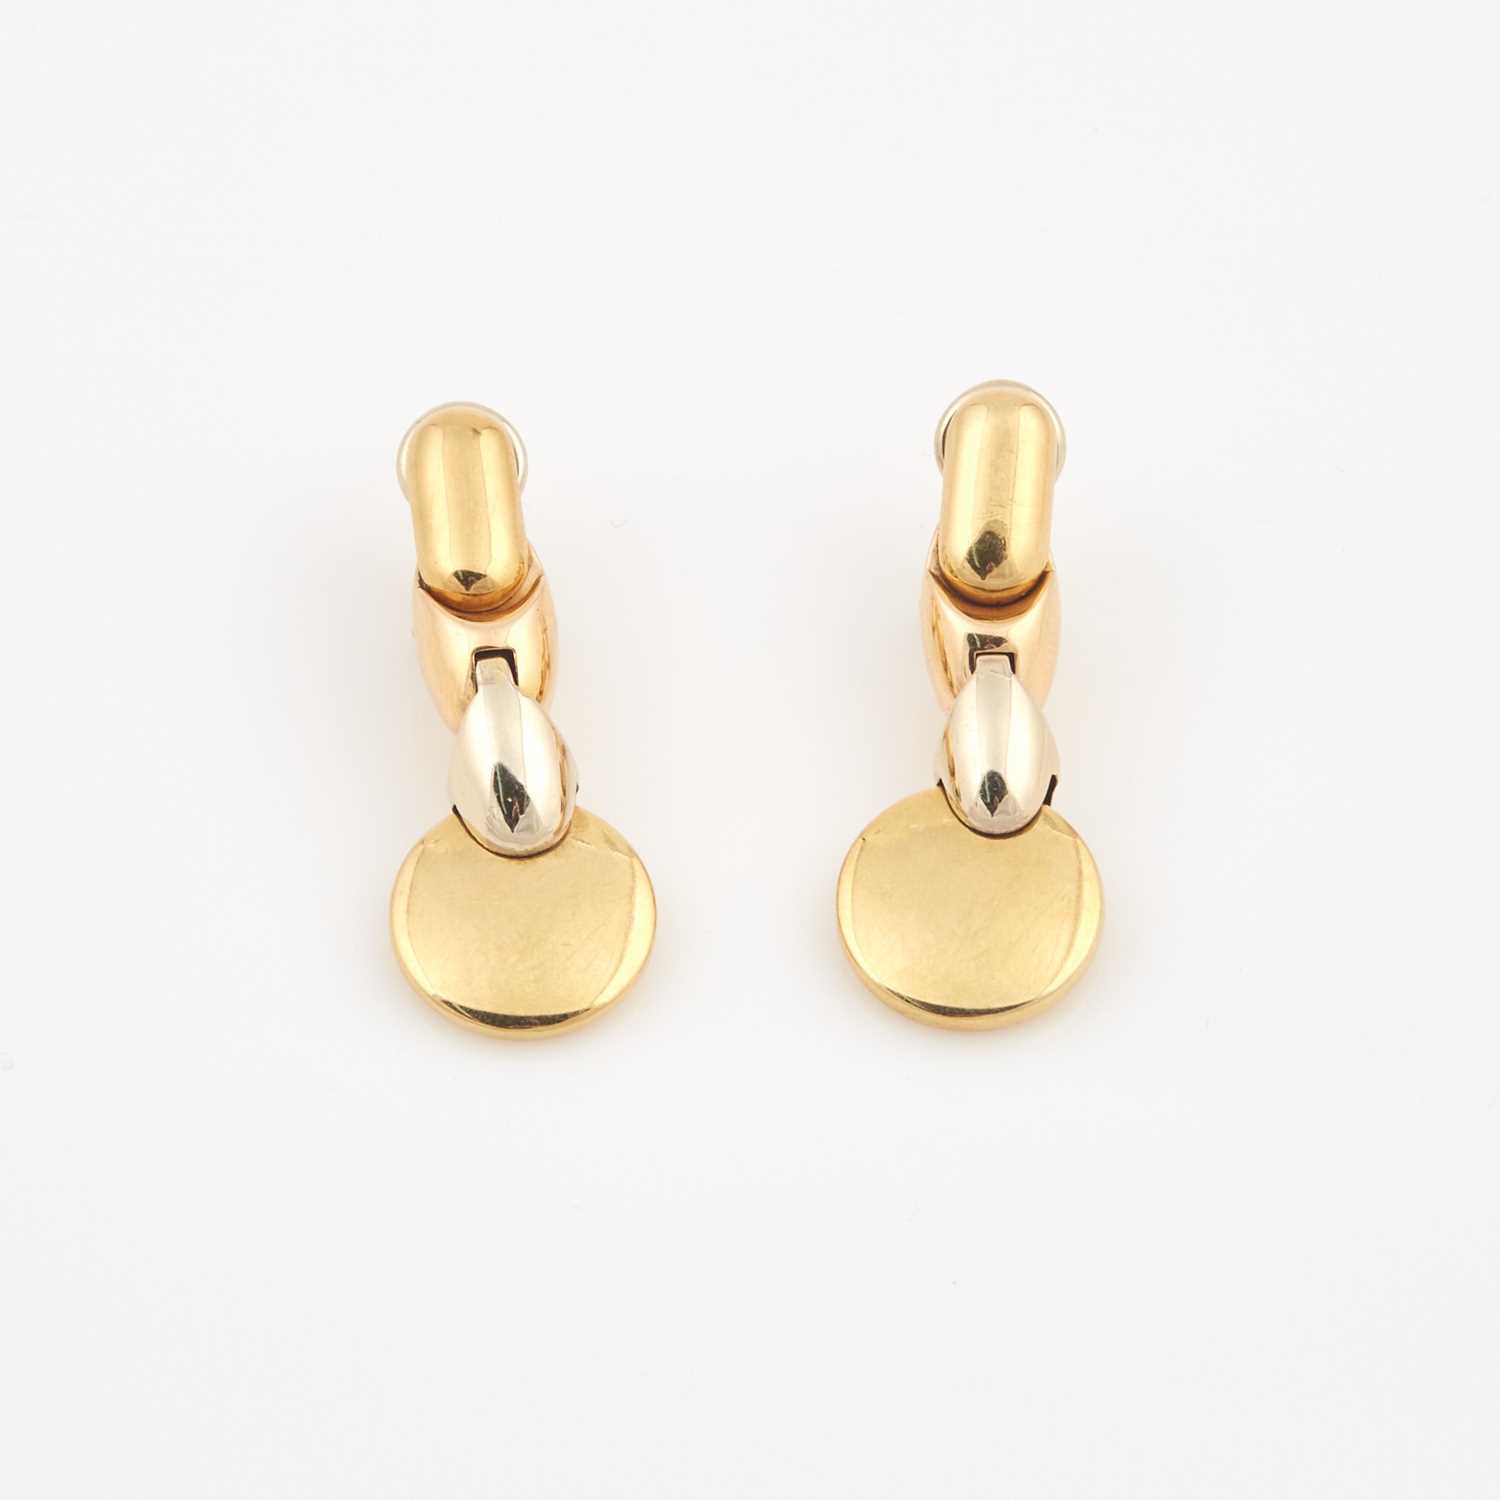 Lot 327 - Two Gold Earrings, 18K 10 dwt.